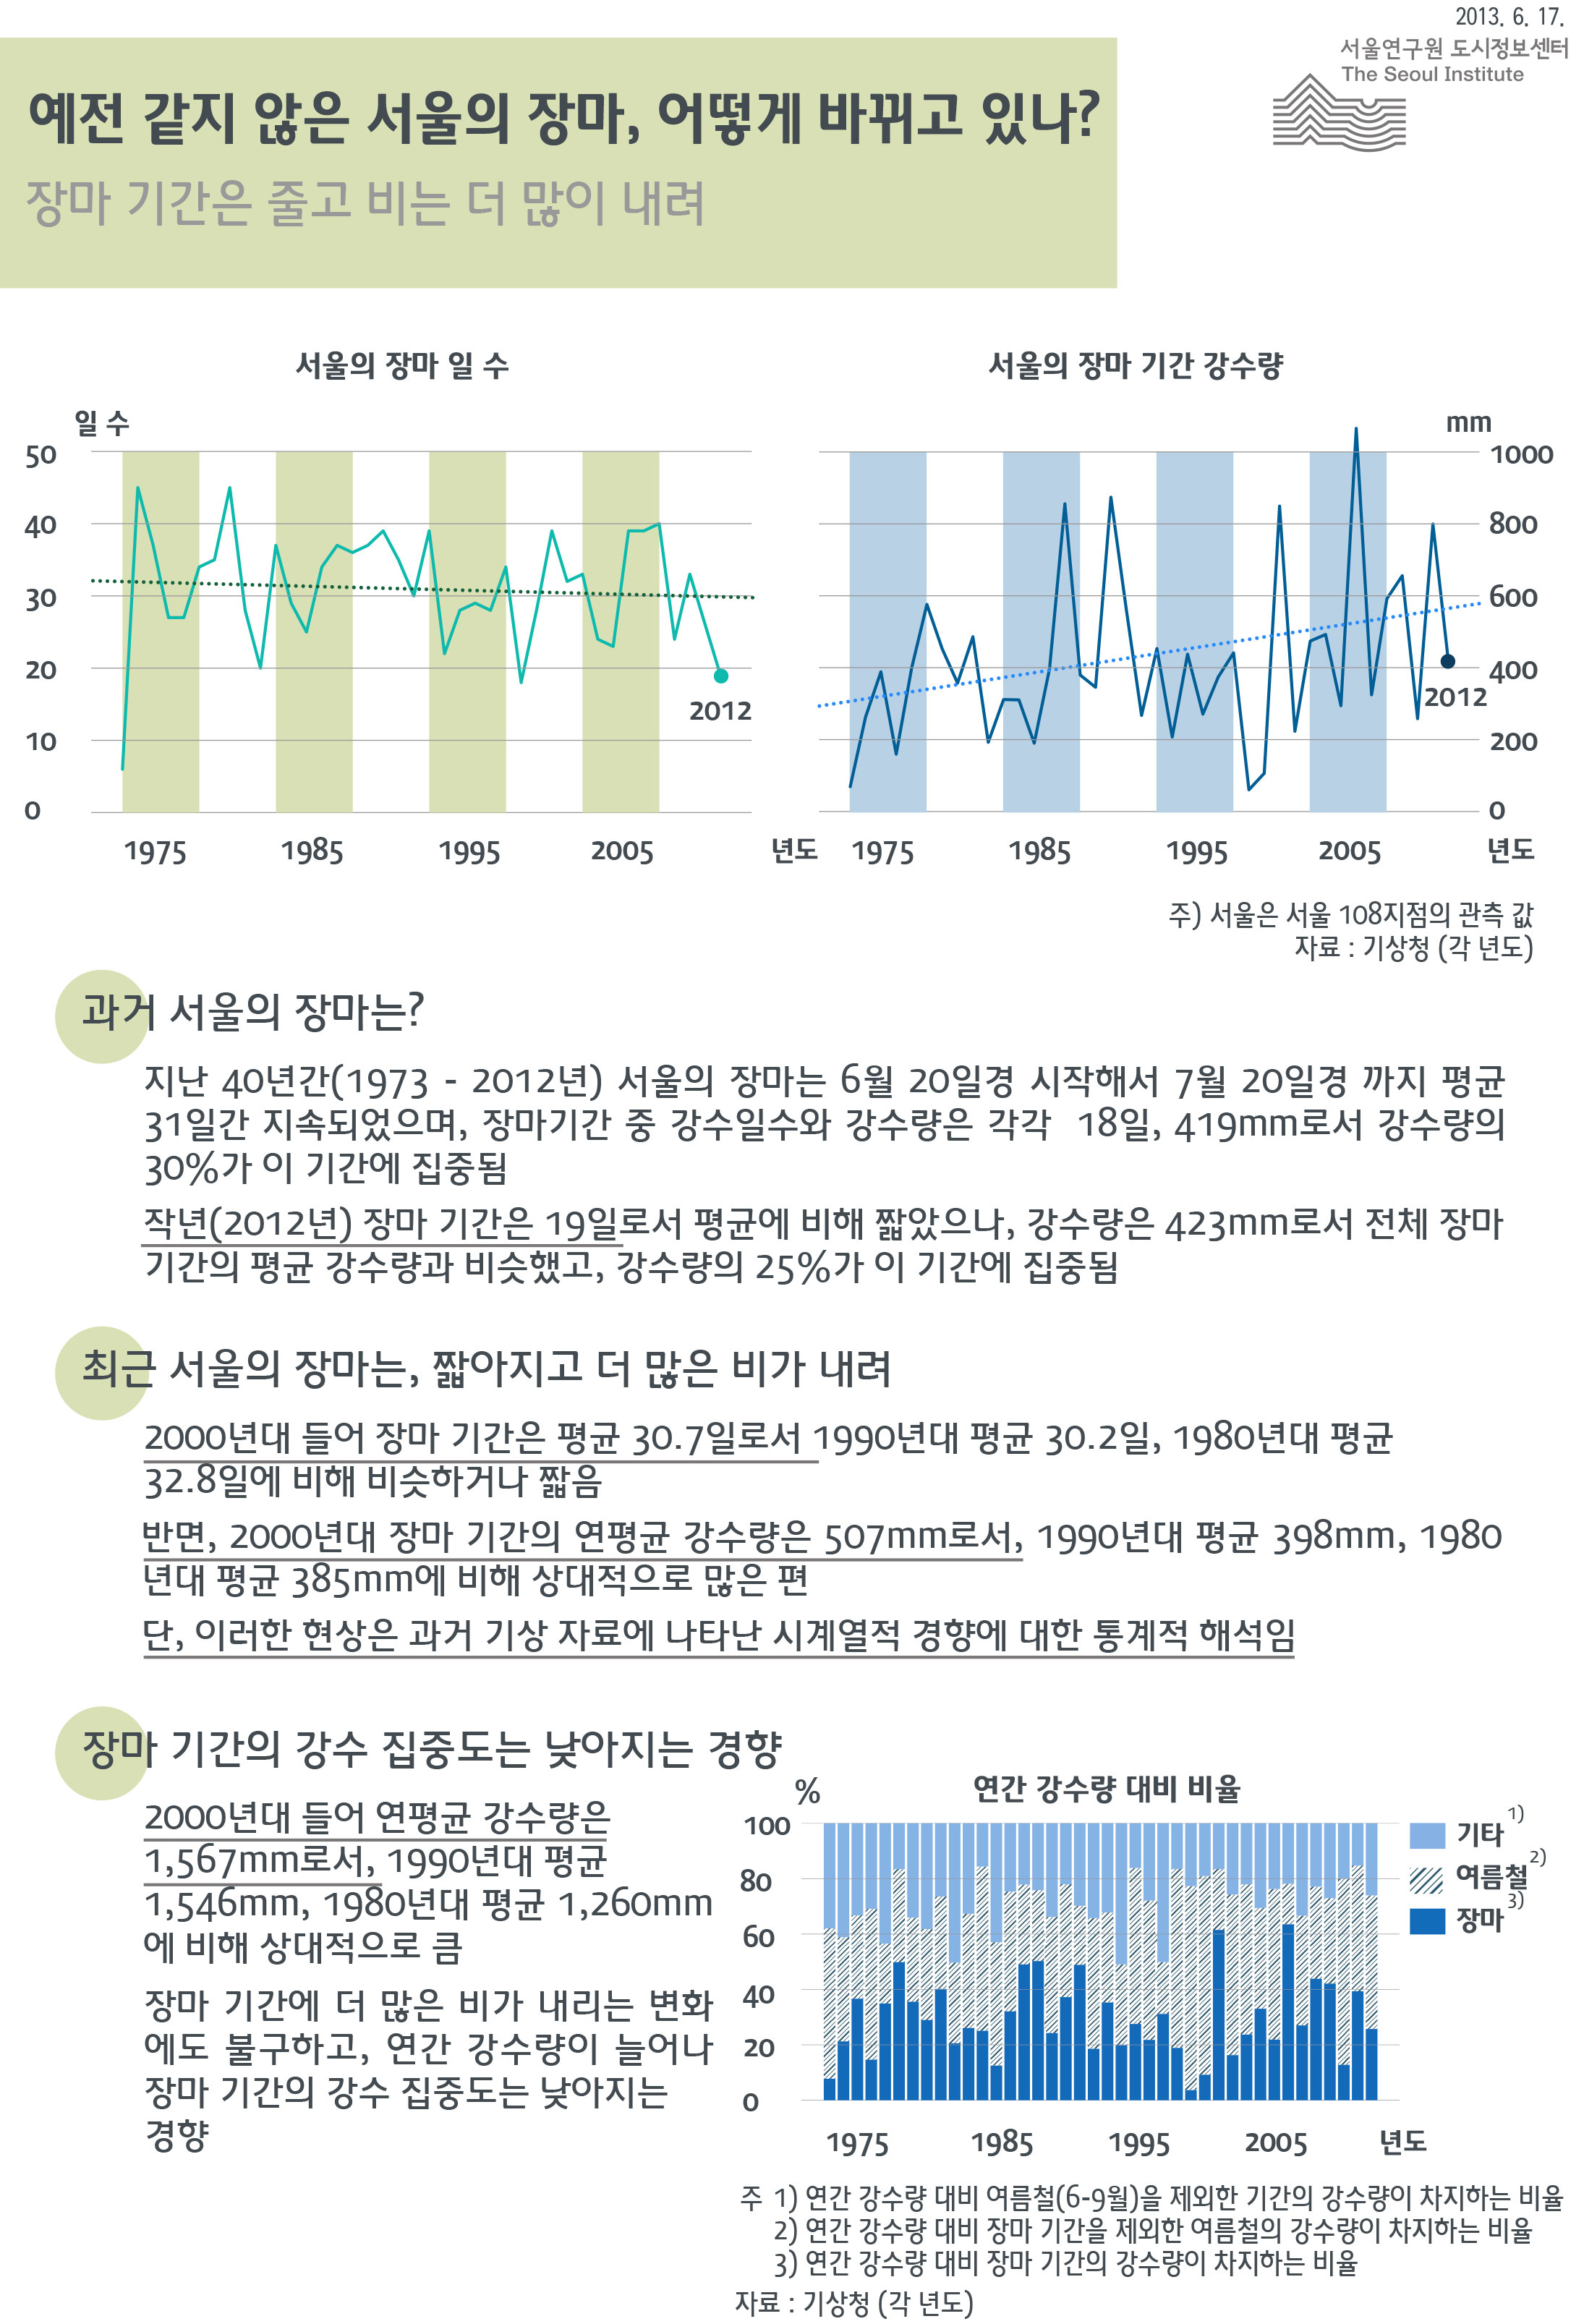 예전 같지 않은 서울의 장마, 어떻게 바뀌고 있나? 서울인포그래픽스 제38회 2013년 6월 17일 장마기간은 줄고 비는 더 많이 내림으로 정리될 수 있습니다. 인포그래픽으로 제공되는 그래픽은 하단에 표로 자세히 제공됩니다.